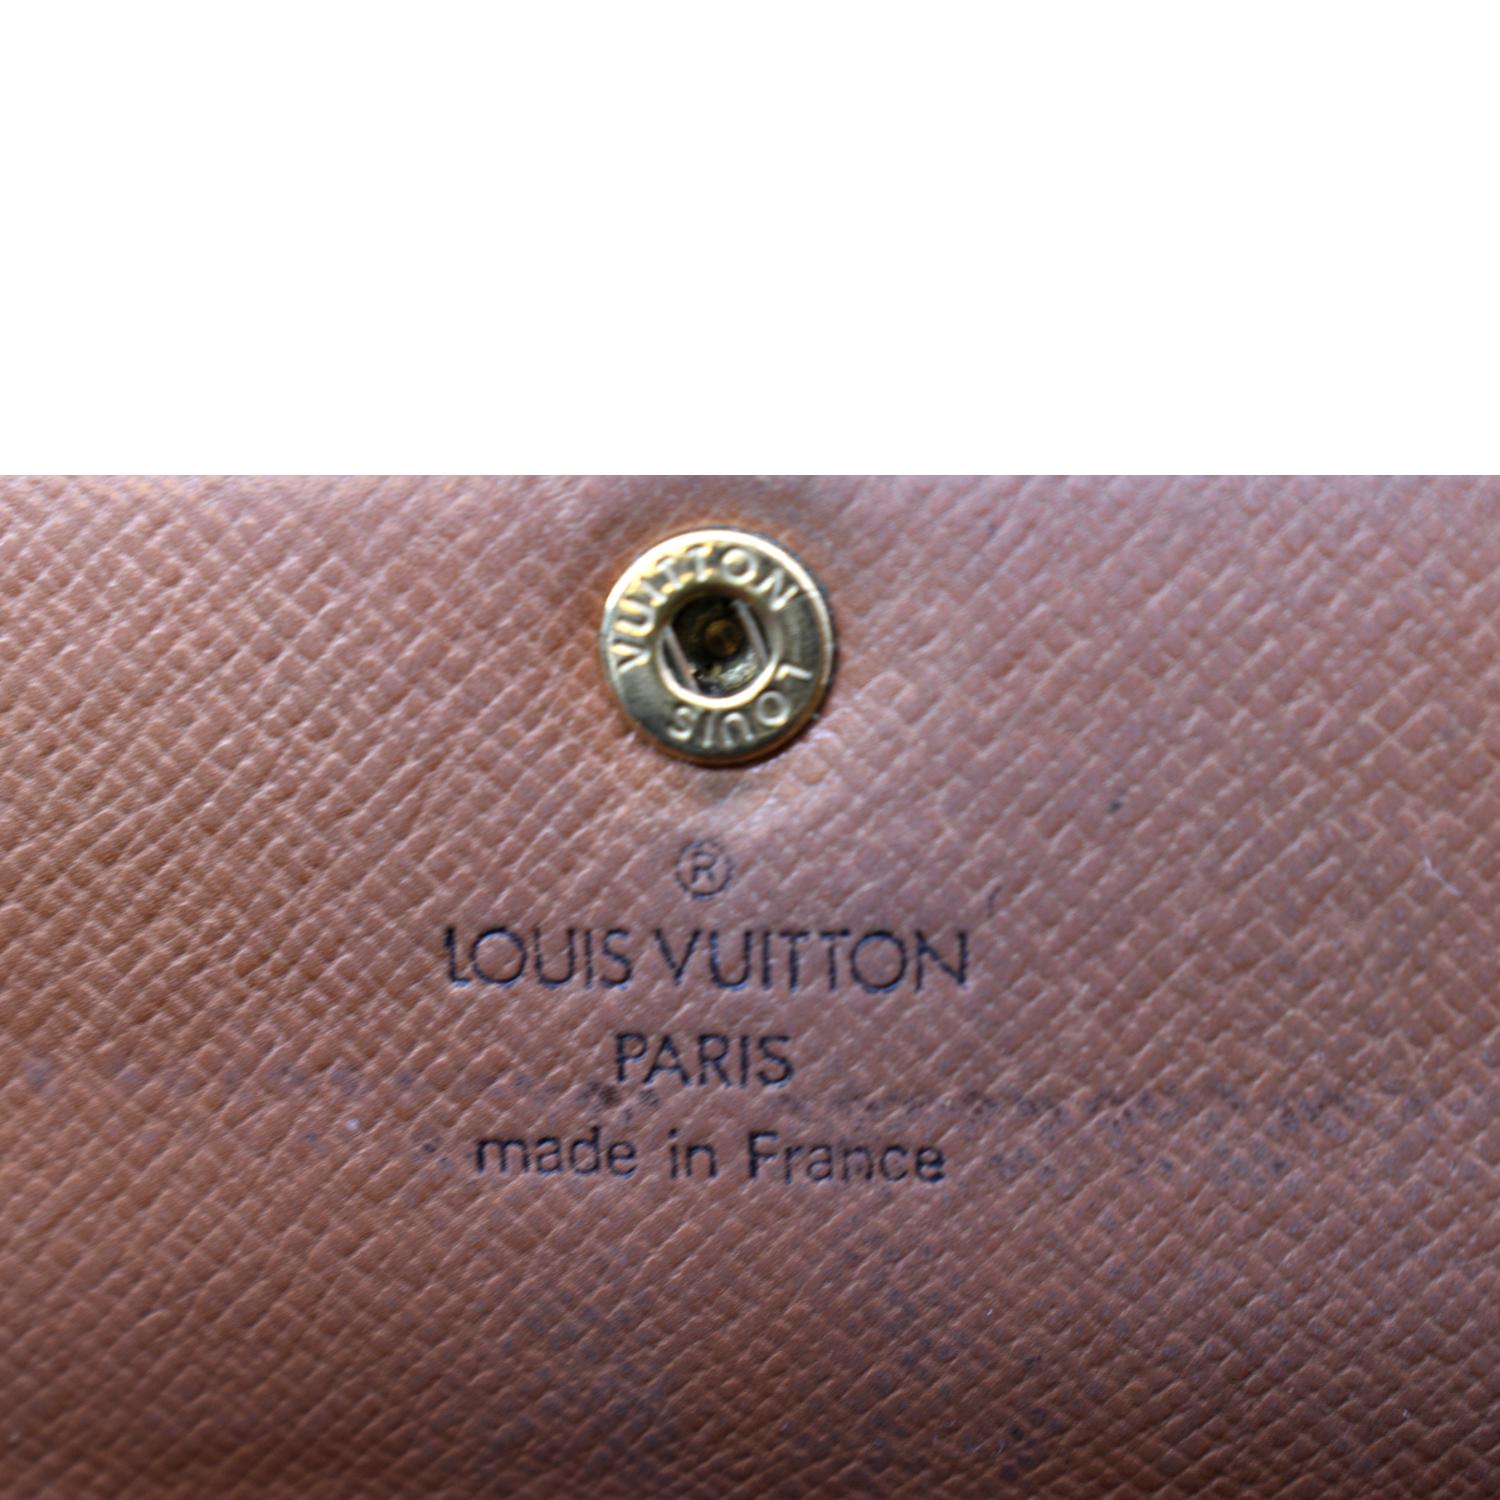 Authentic Louis Vuitton Monogram Canvas Sarah Wallet Date Code: 8911AN